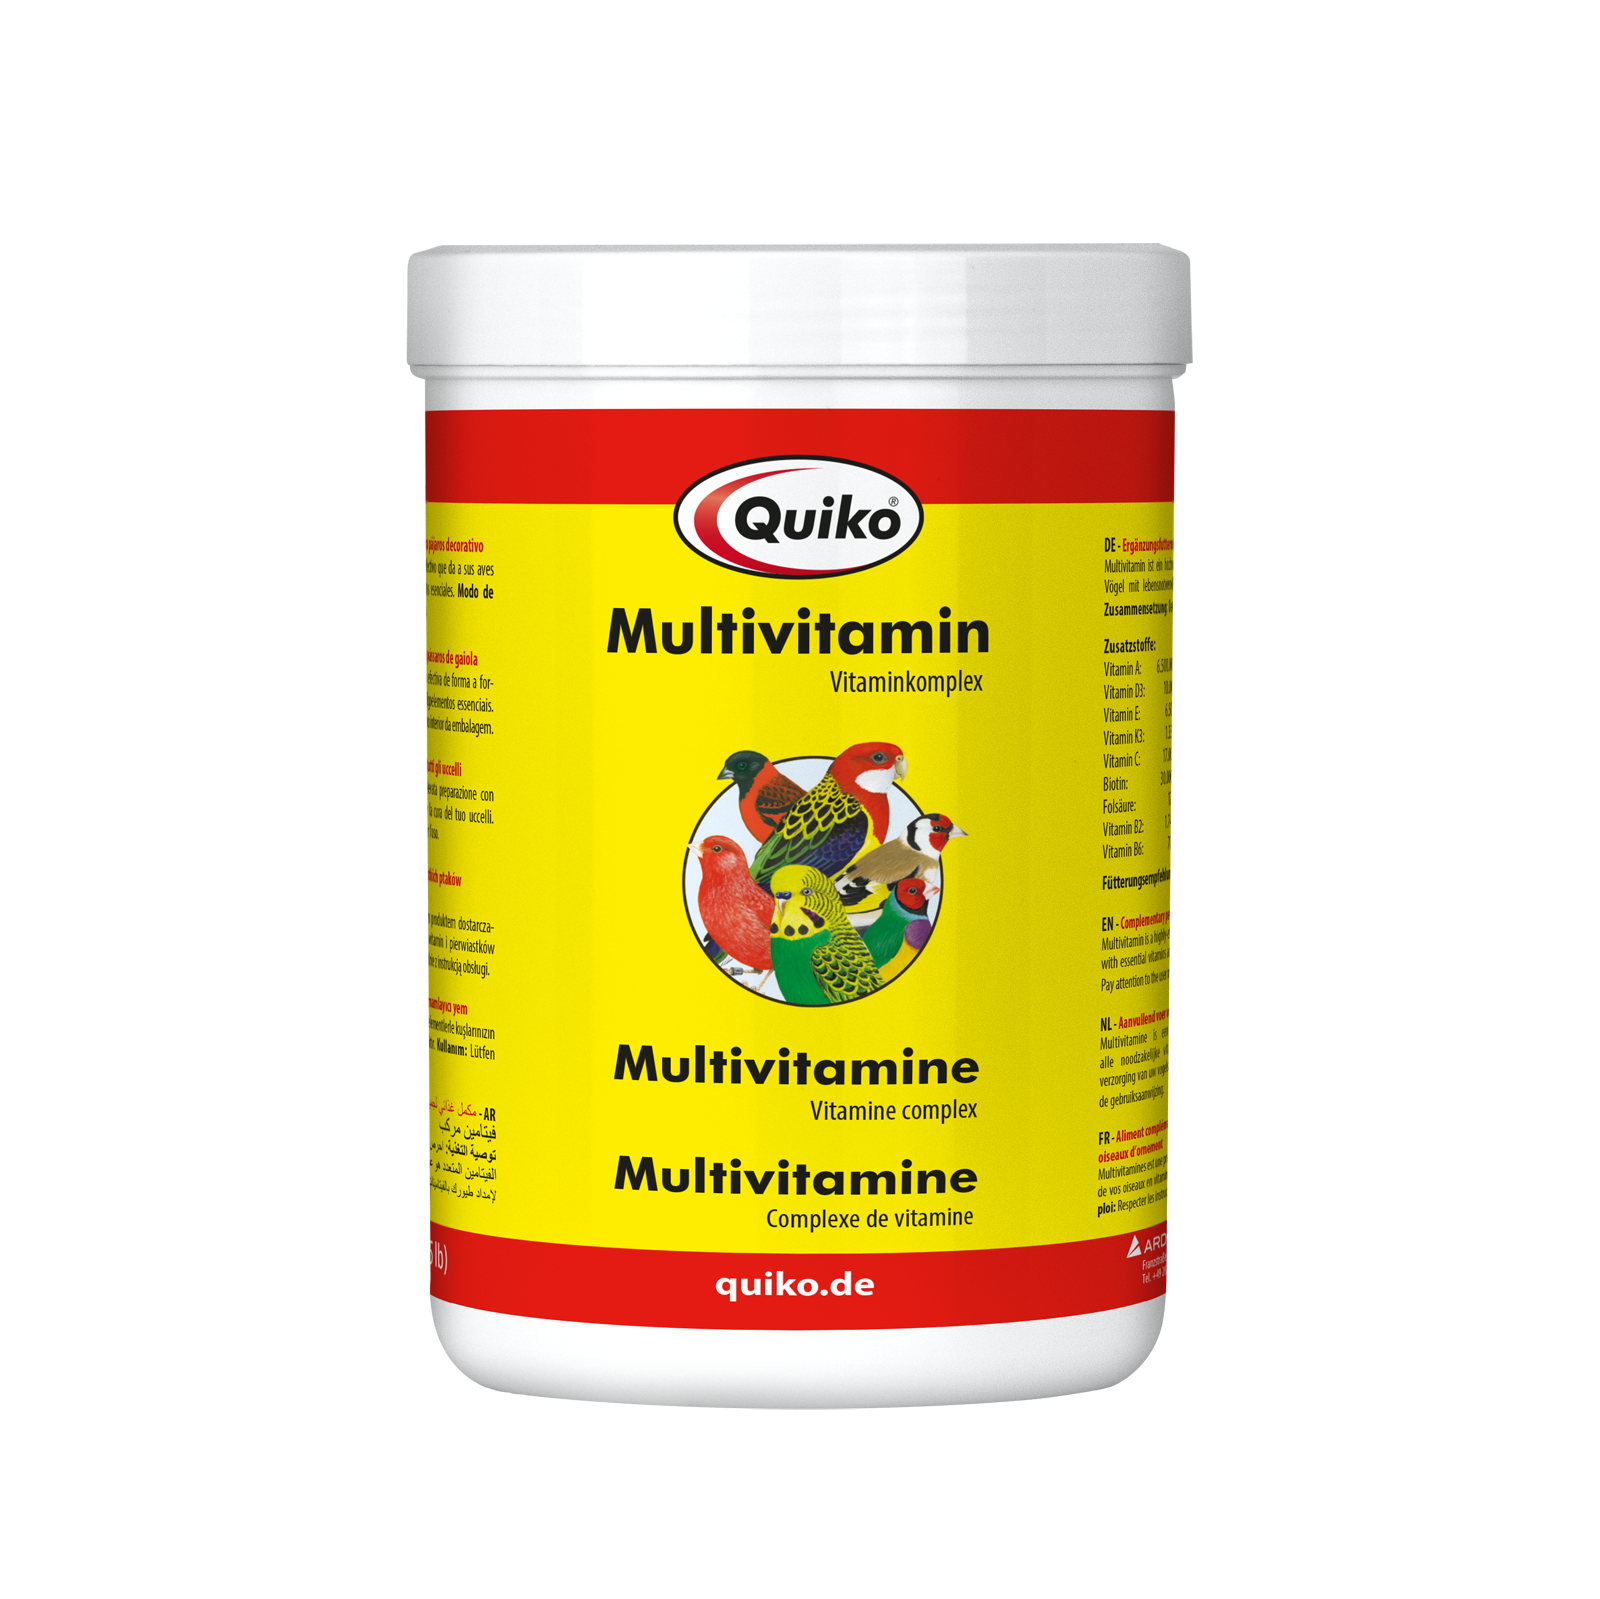 Quiko Multivitamin: Ergänzungsfuttermittel zur Vitaminversorgung von Ziervögeln